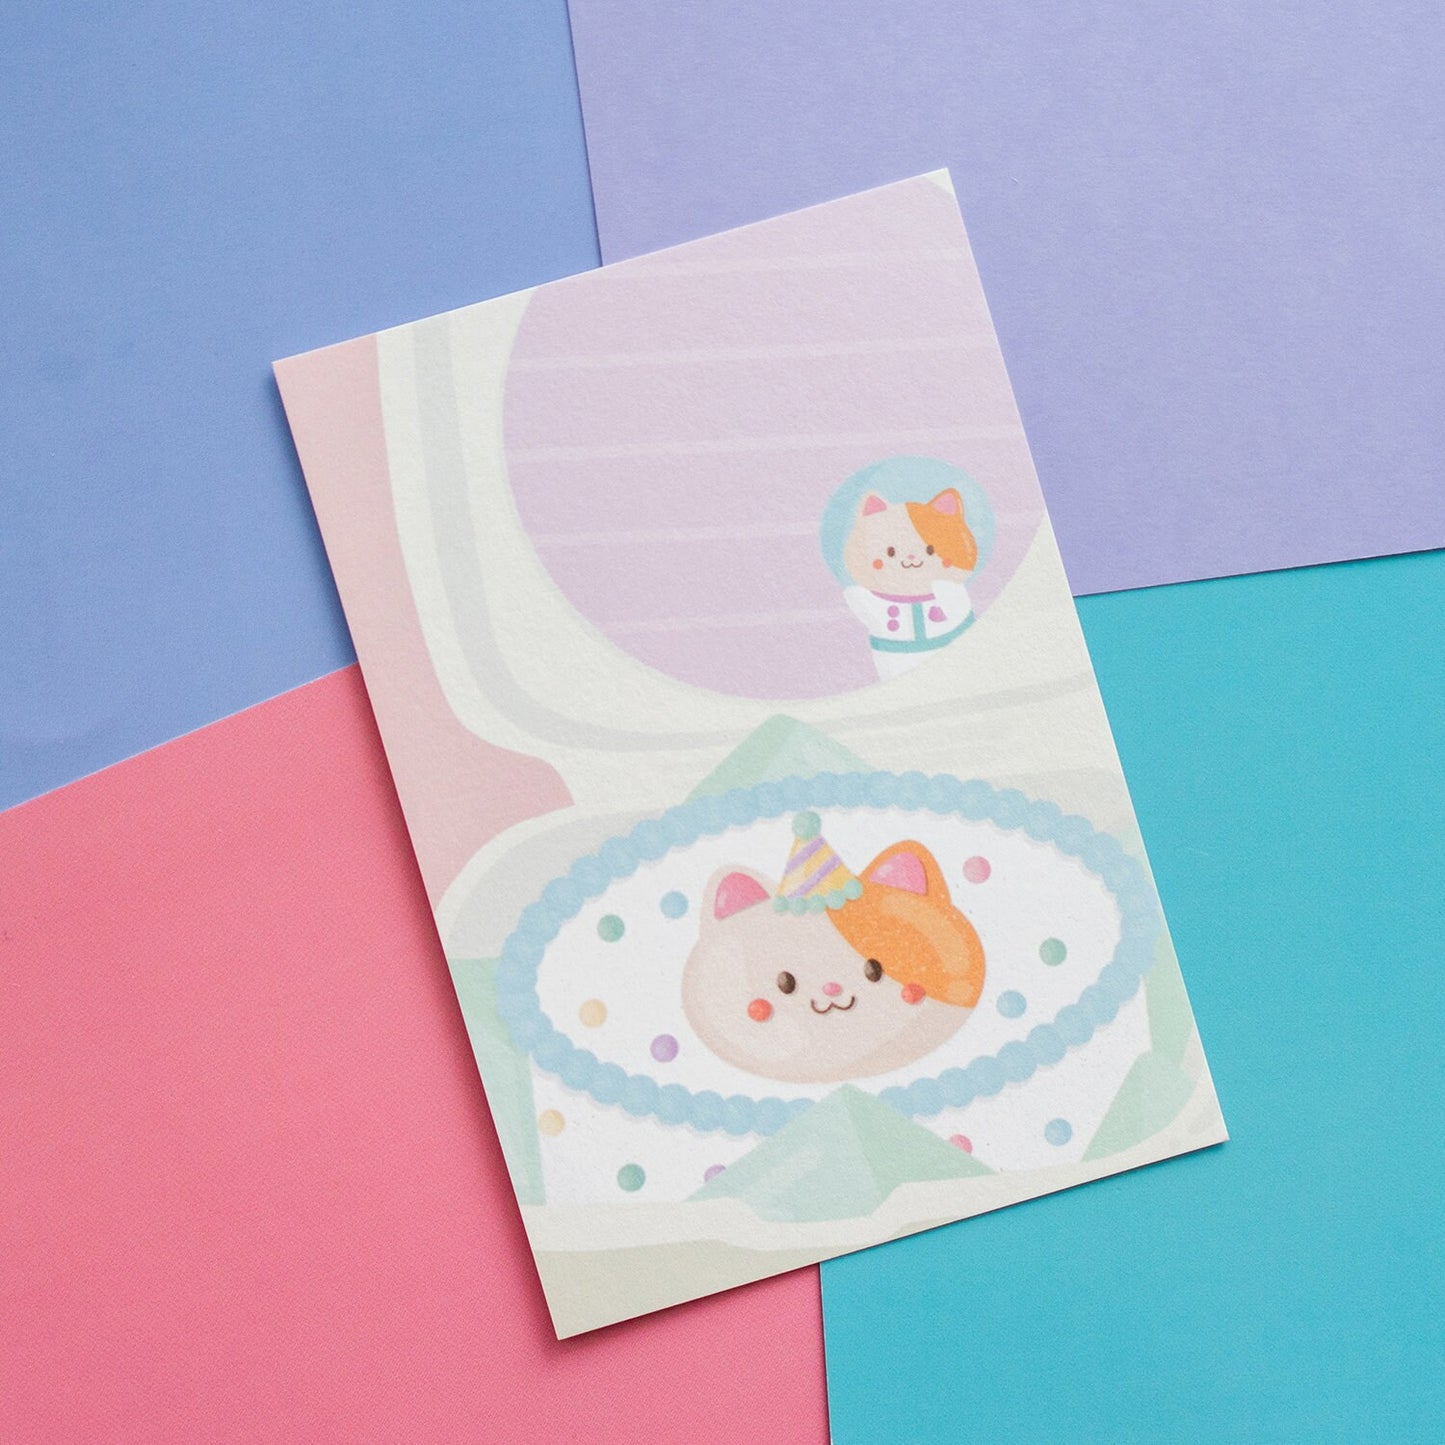 Space Nyan Bento Cake Postcard / Print